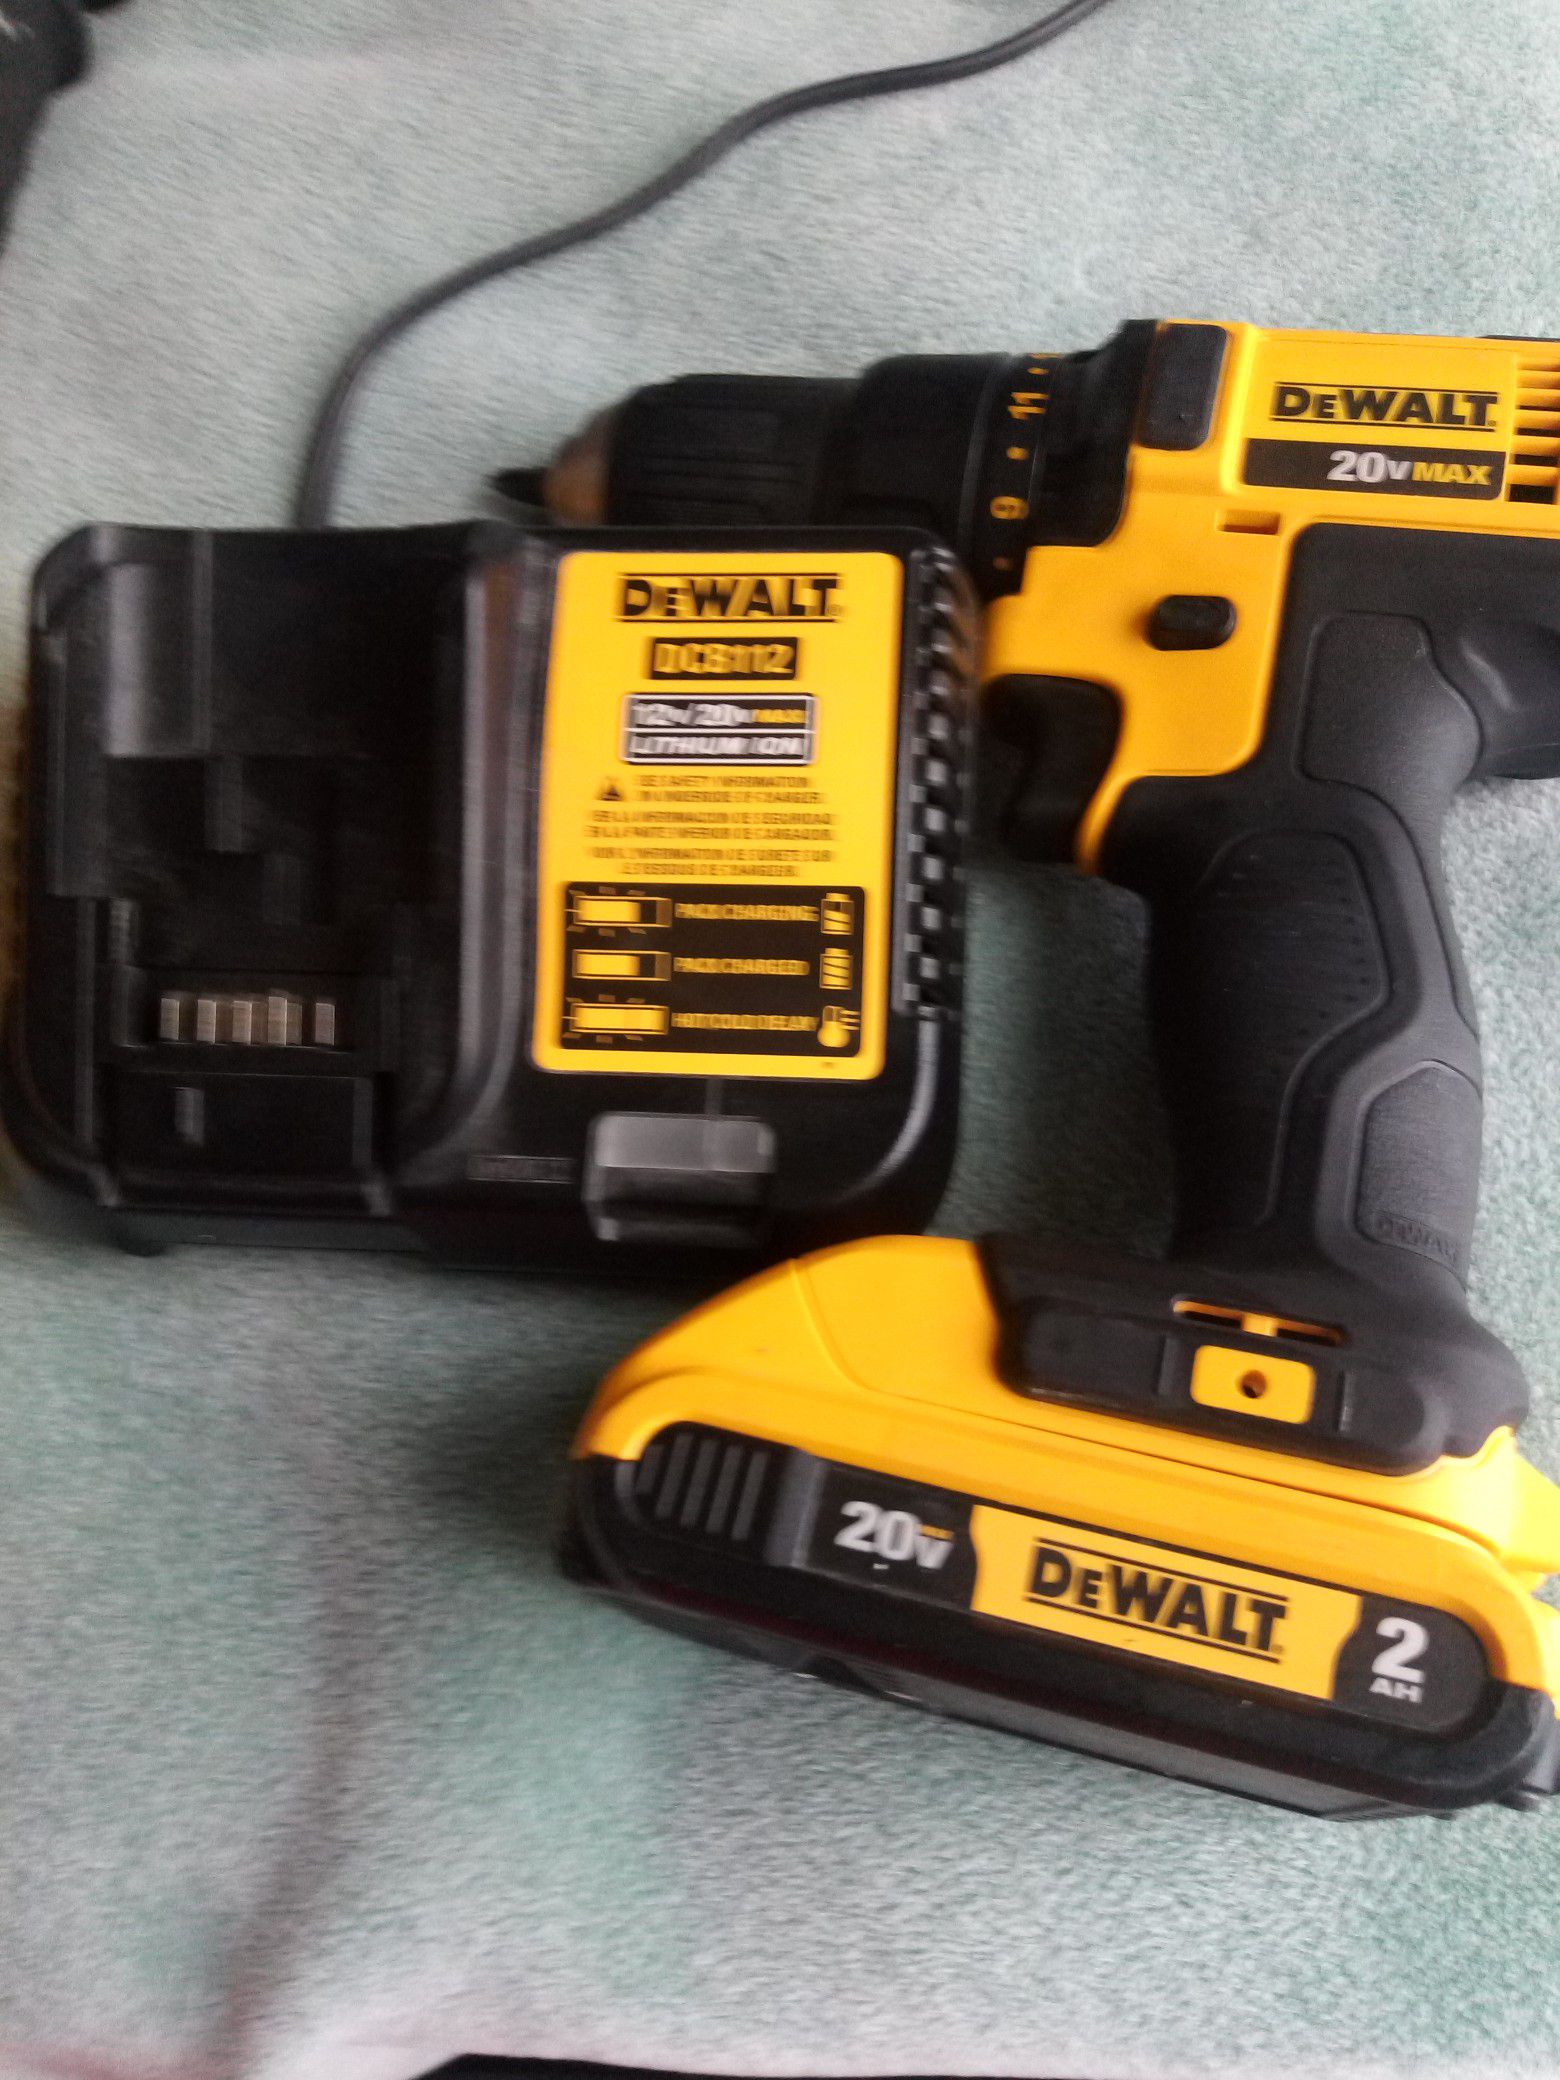 20 volt dewalt drill with 10 other necessities